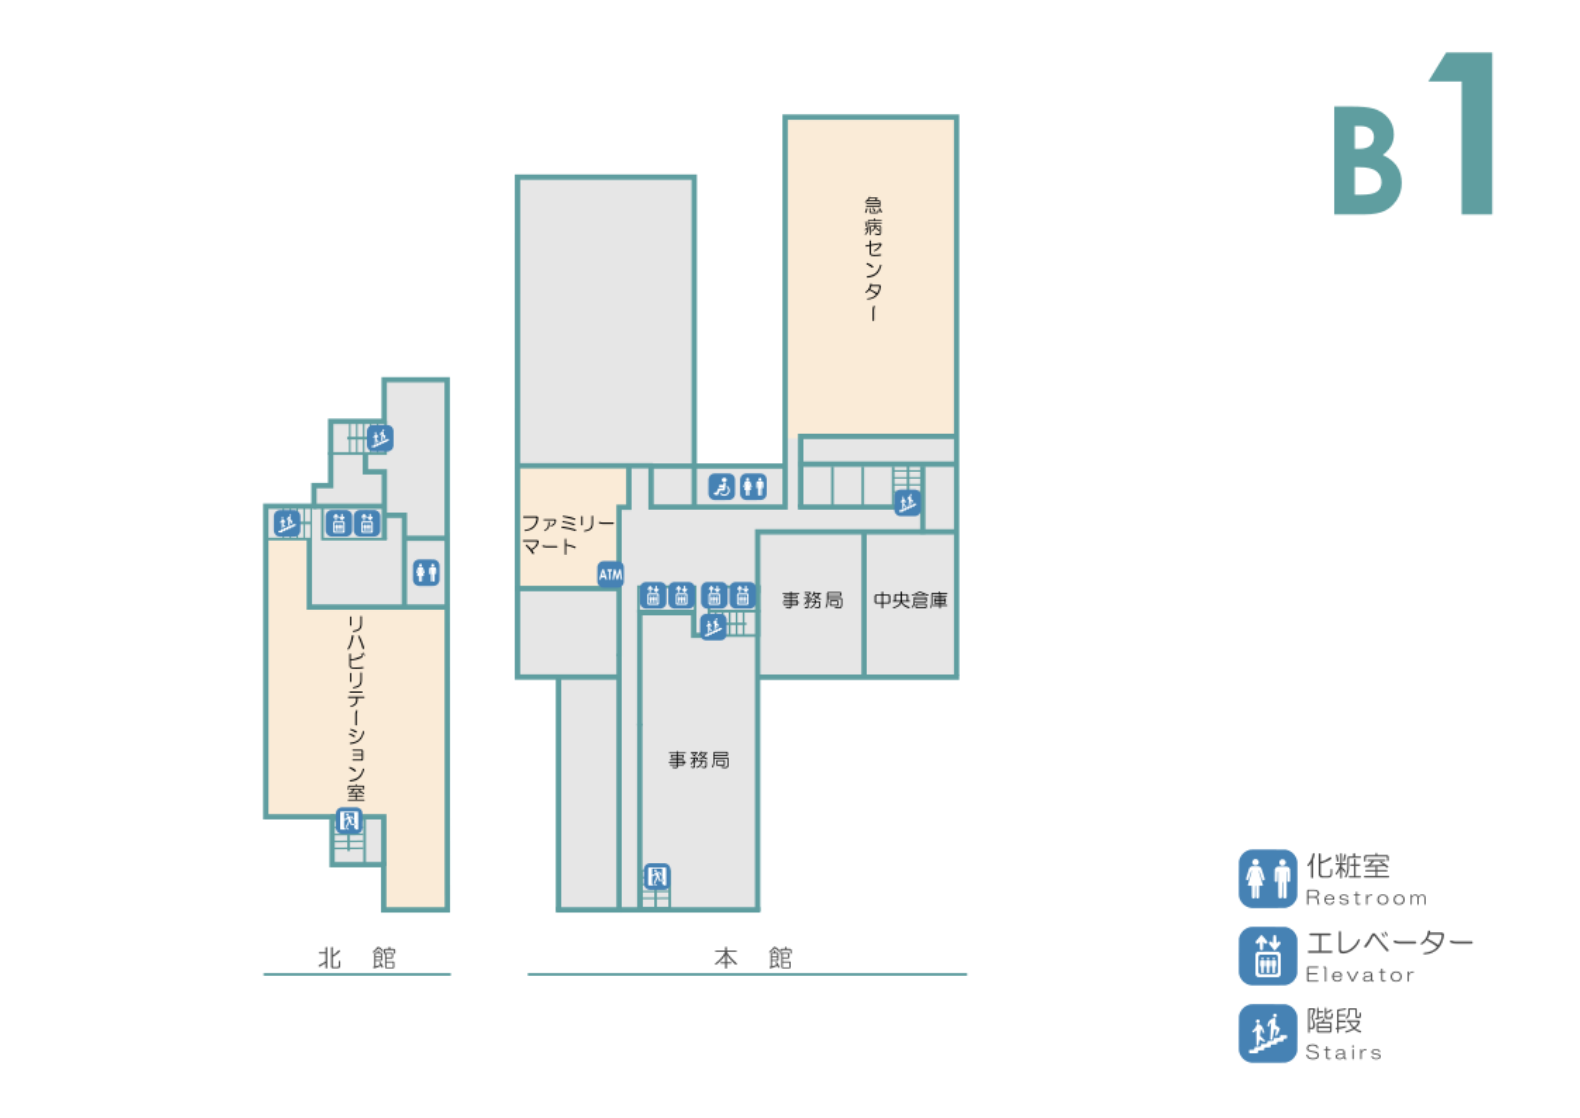 地下1階　急病センター / リハビリテーション室  / コンビニエンスストア